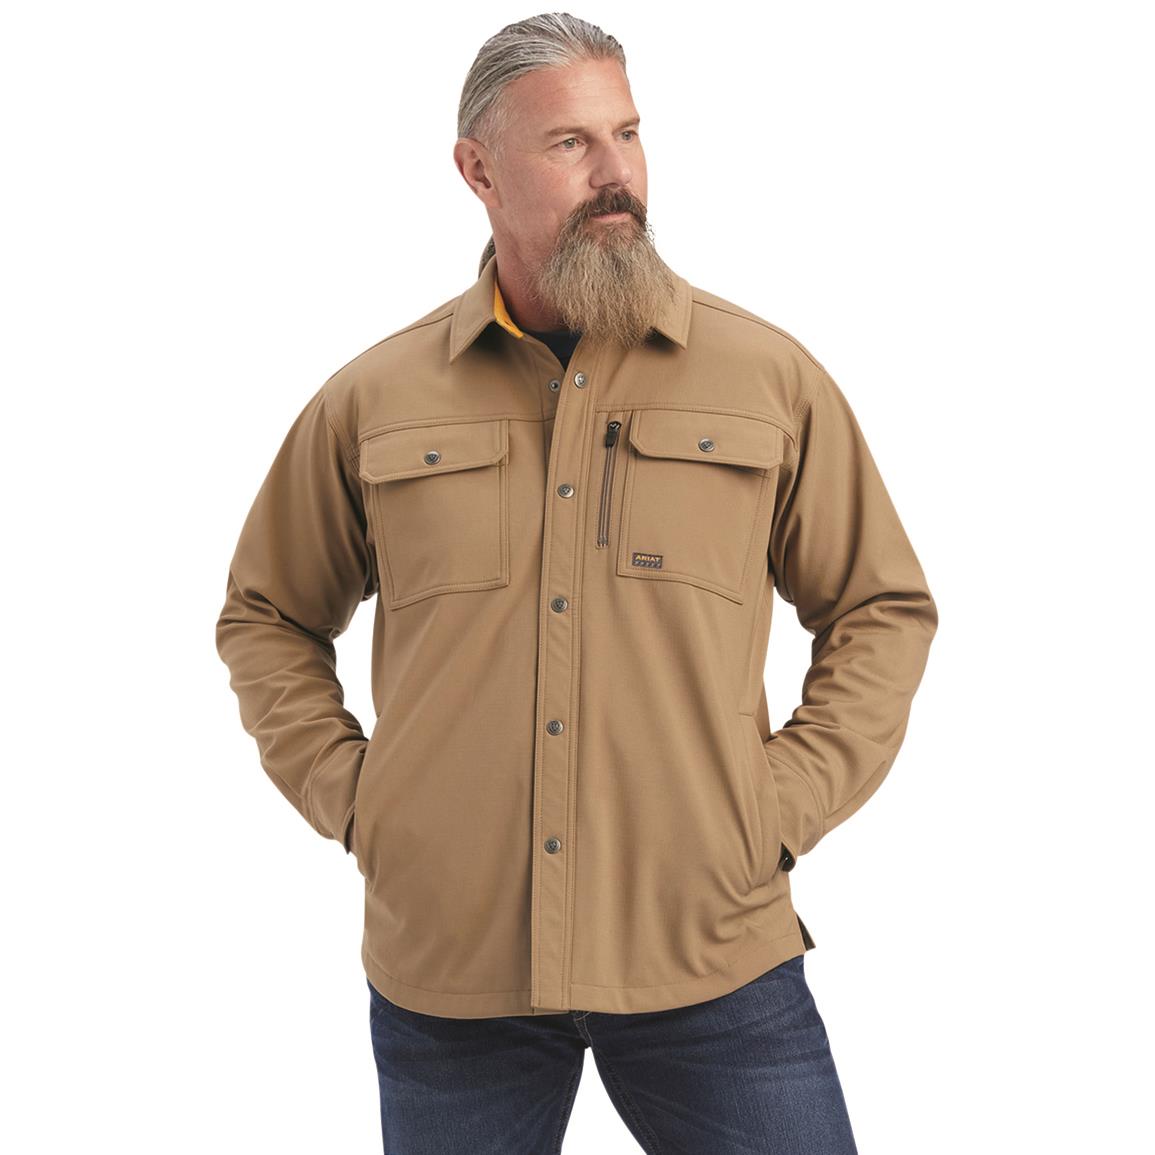 Ariat Men's Rebar DuraStretch Utility Softshell Shirt Jacket, Field Khaki